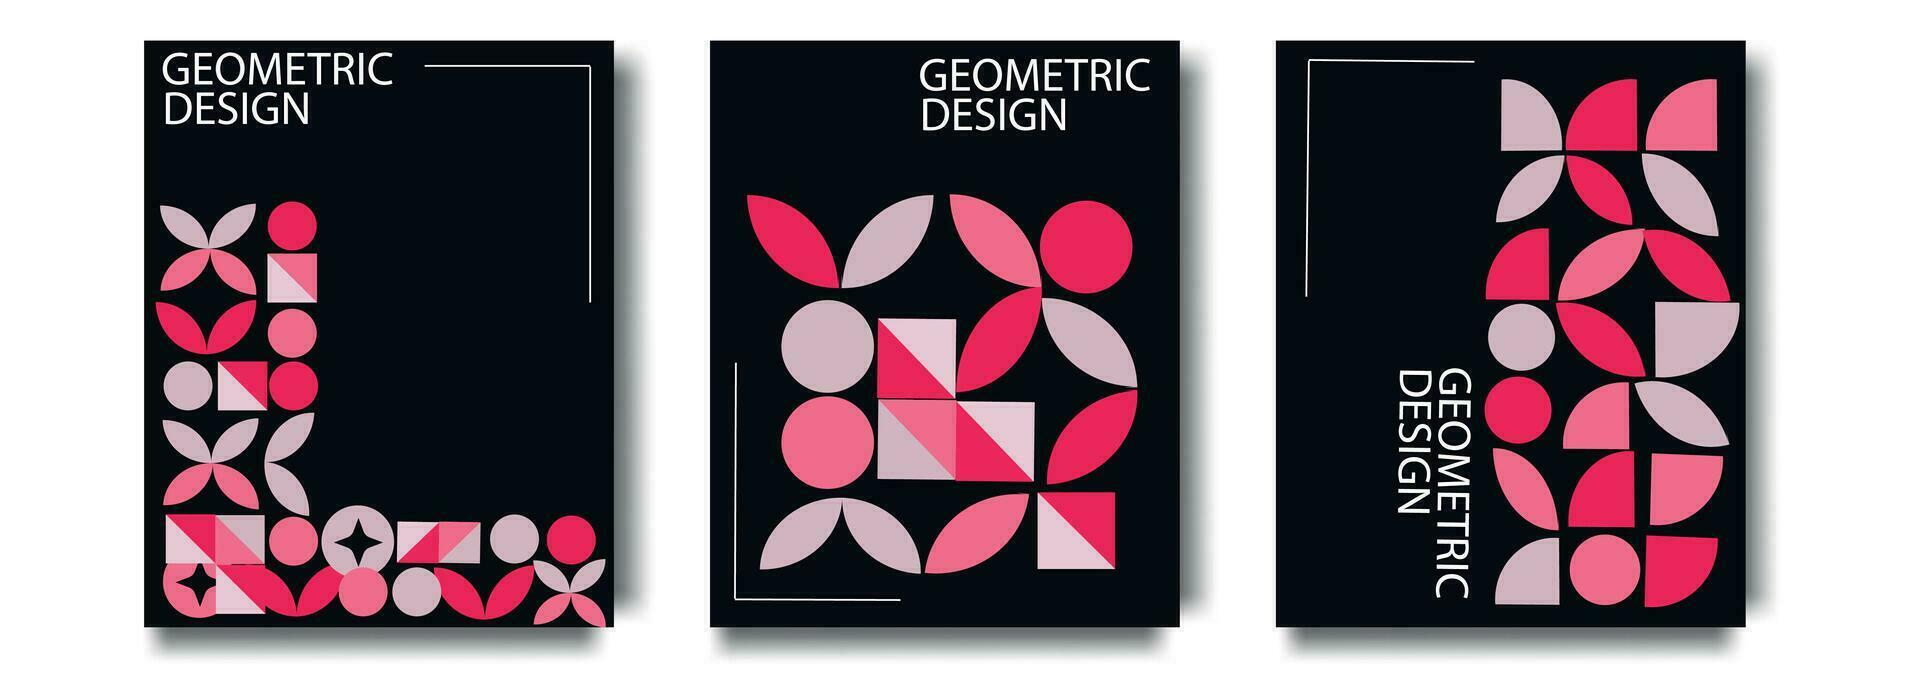 modern Bauhaus Poster geometrisch abstrakt Formen. kreativ Abdeckungen, Layouts oder Plakate Konzept im modern minimal Stil zum korporativ Identität, Marke, Sozial Medien. modisch Design Vorlagen vektor